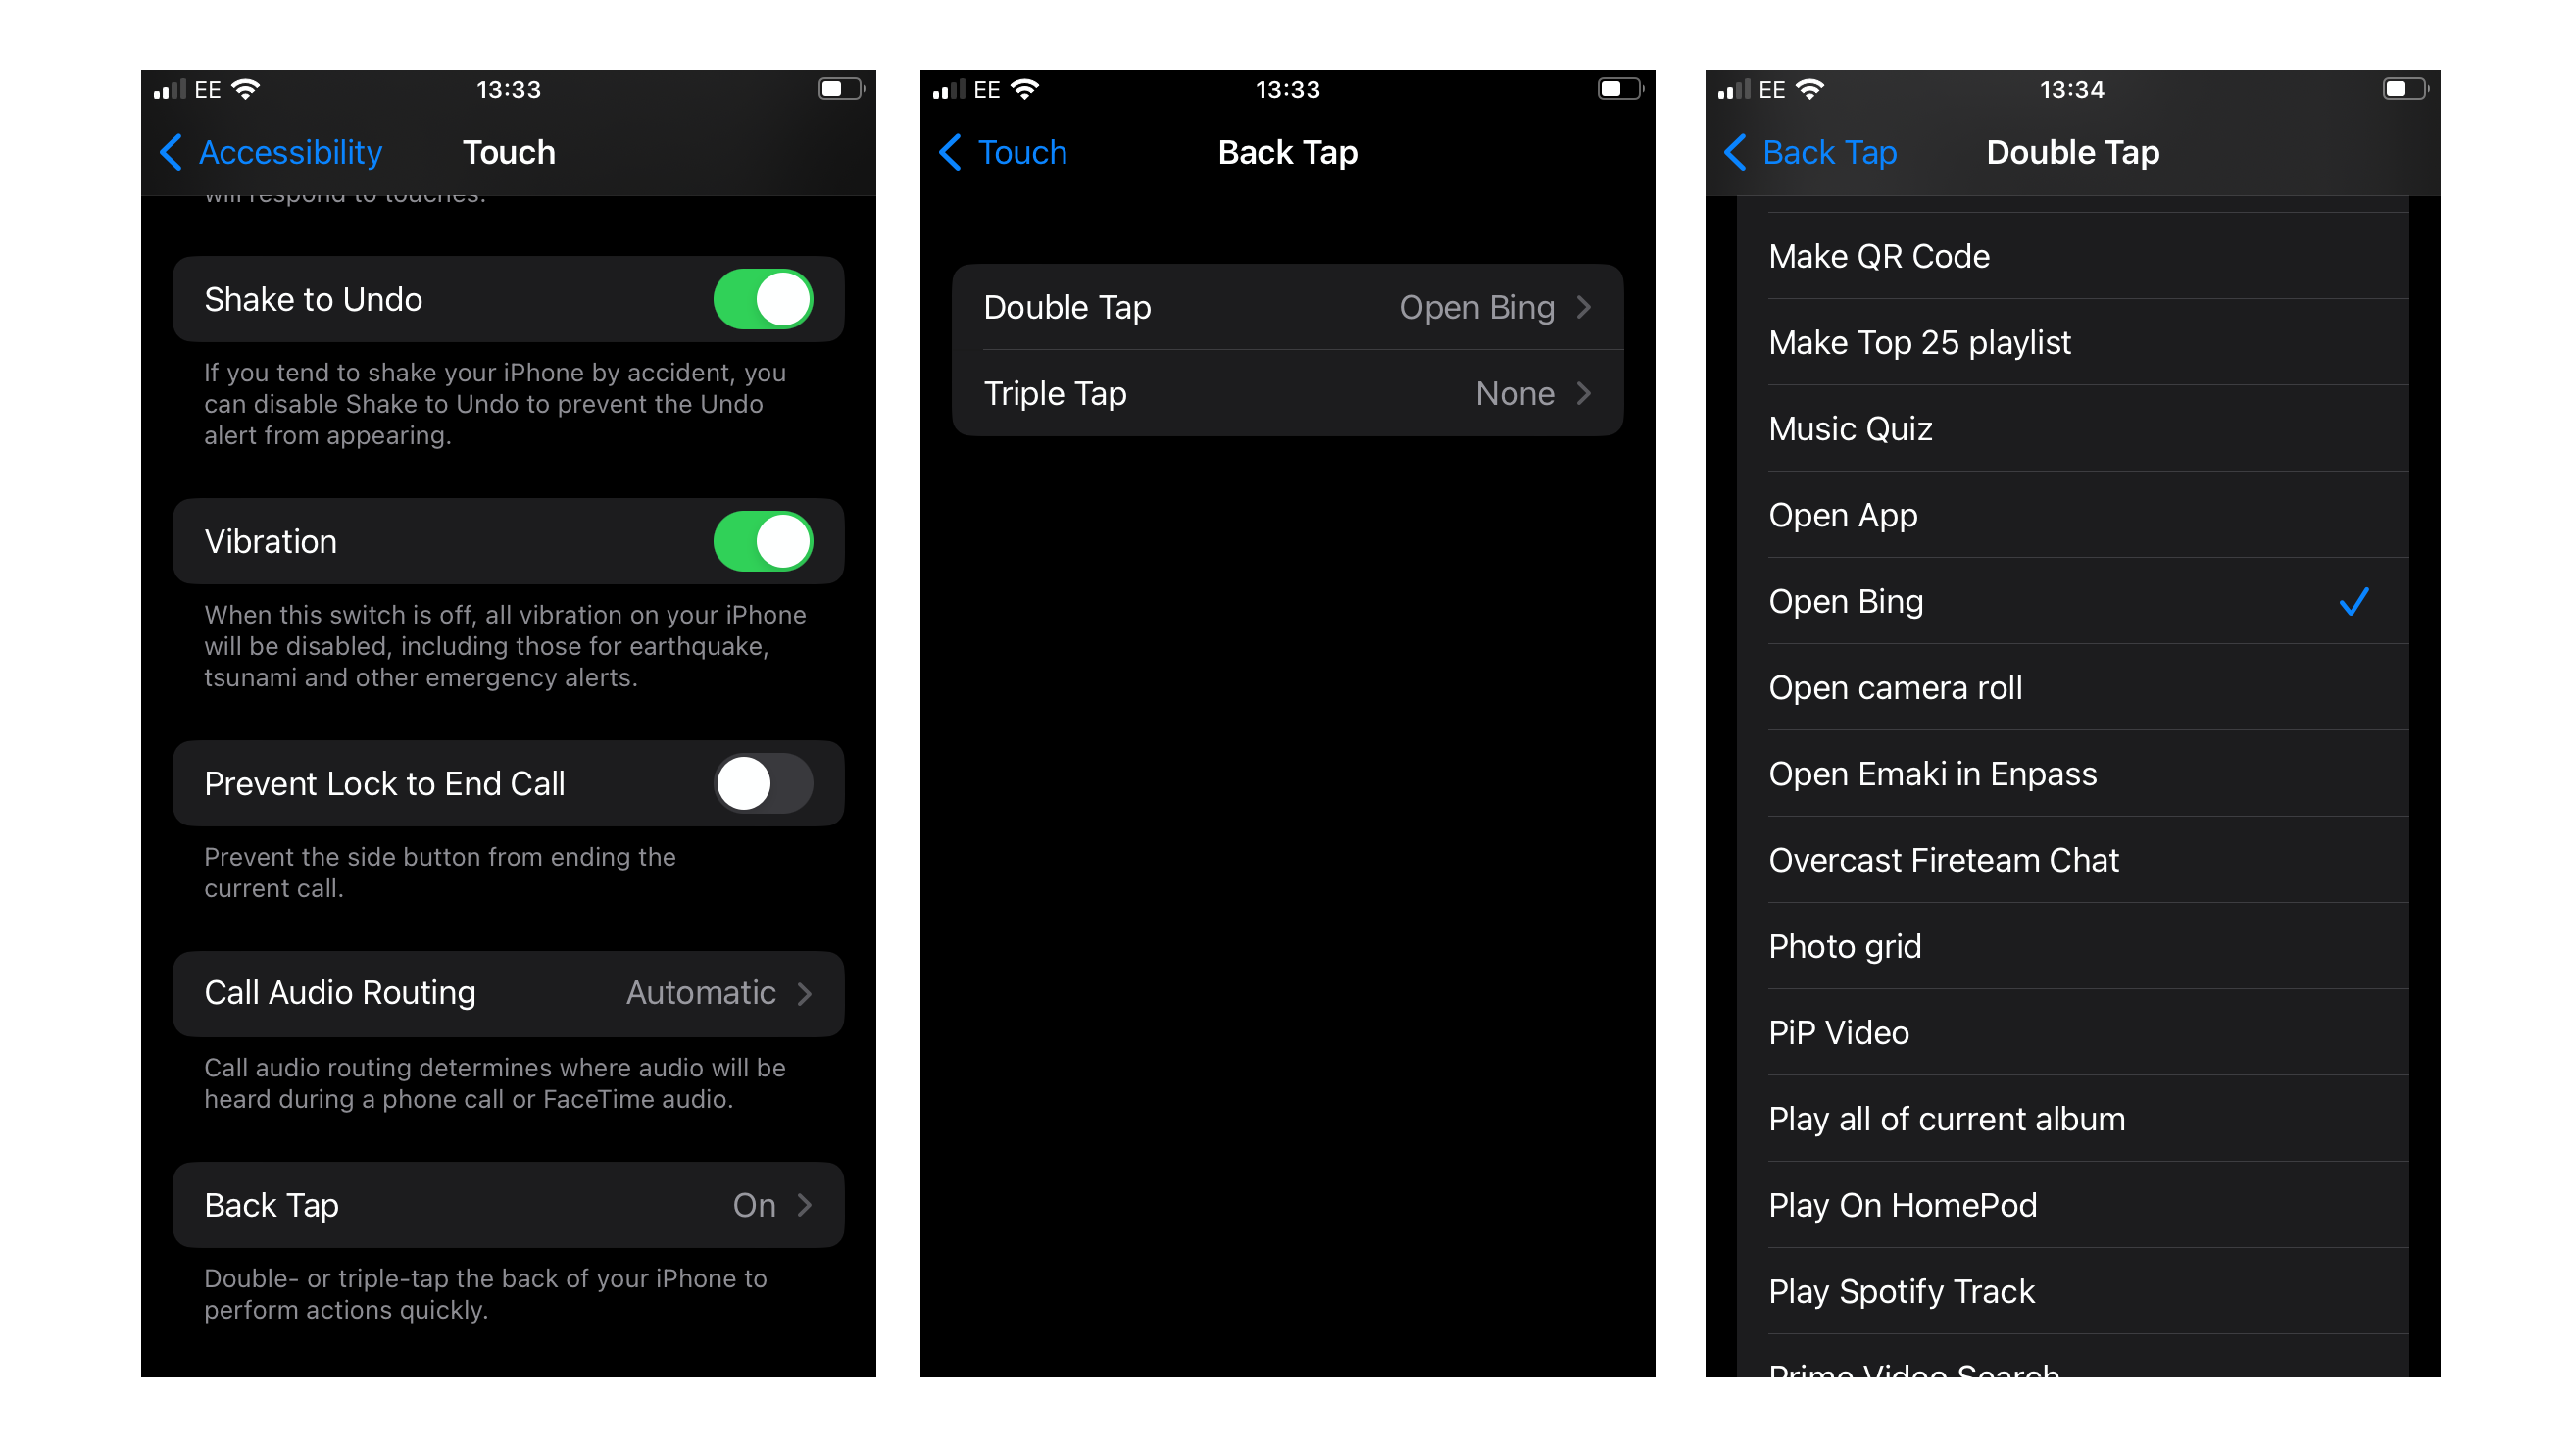 Configurando o Back Tap para iniciar o aplicativo Bing no iPhone